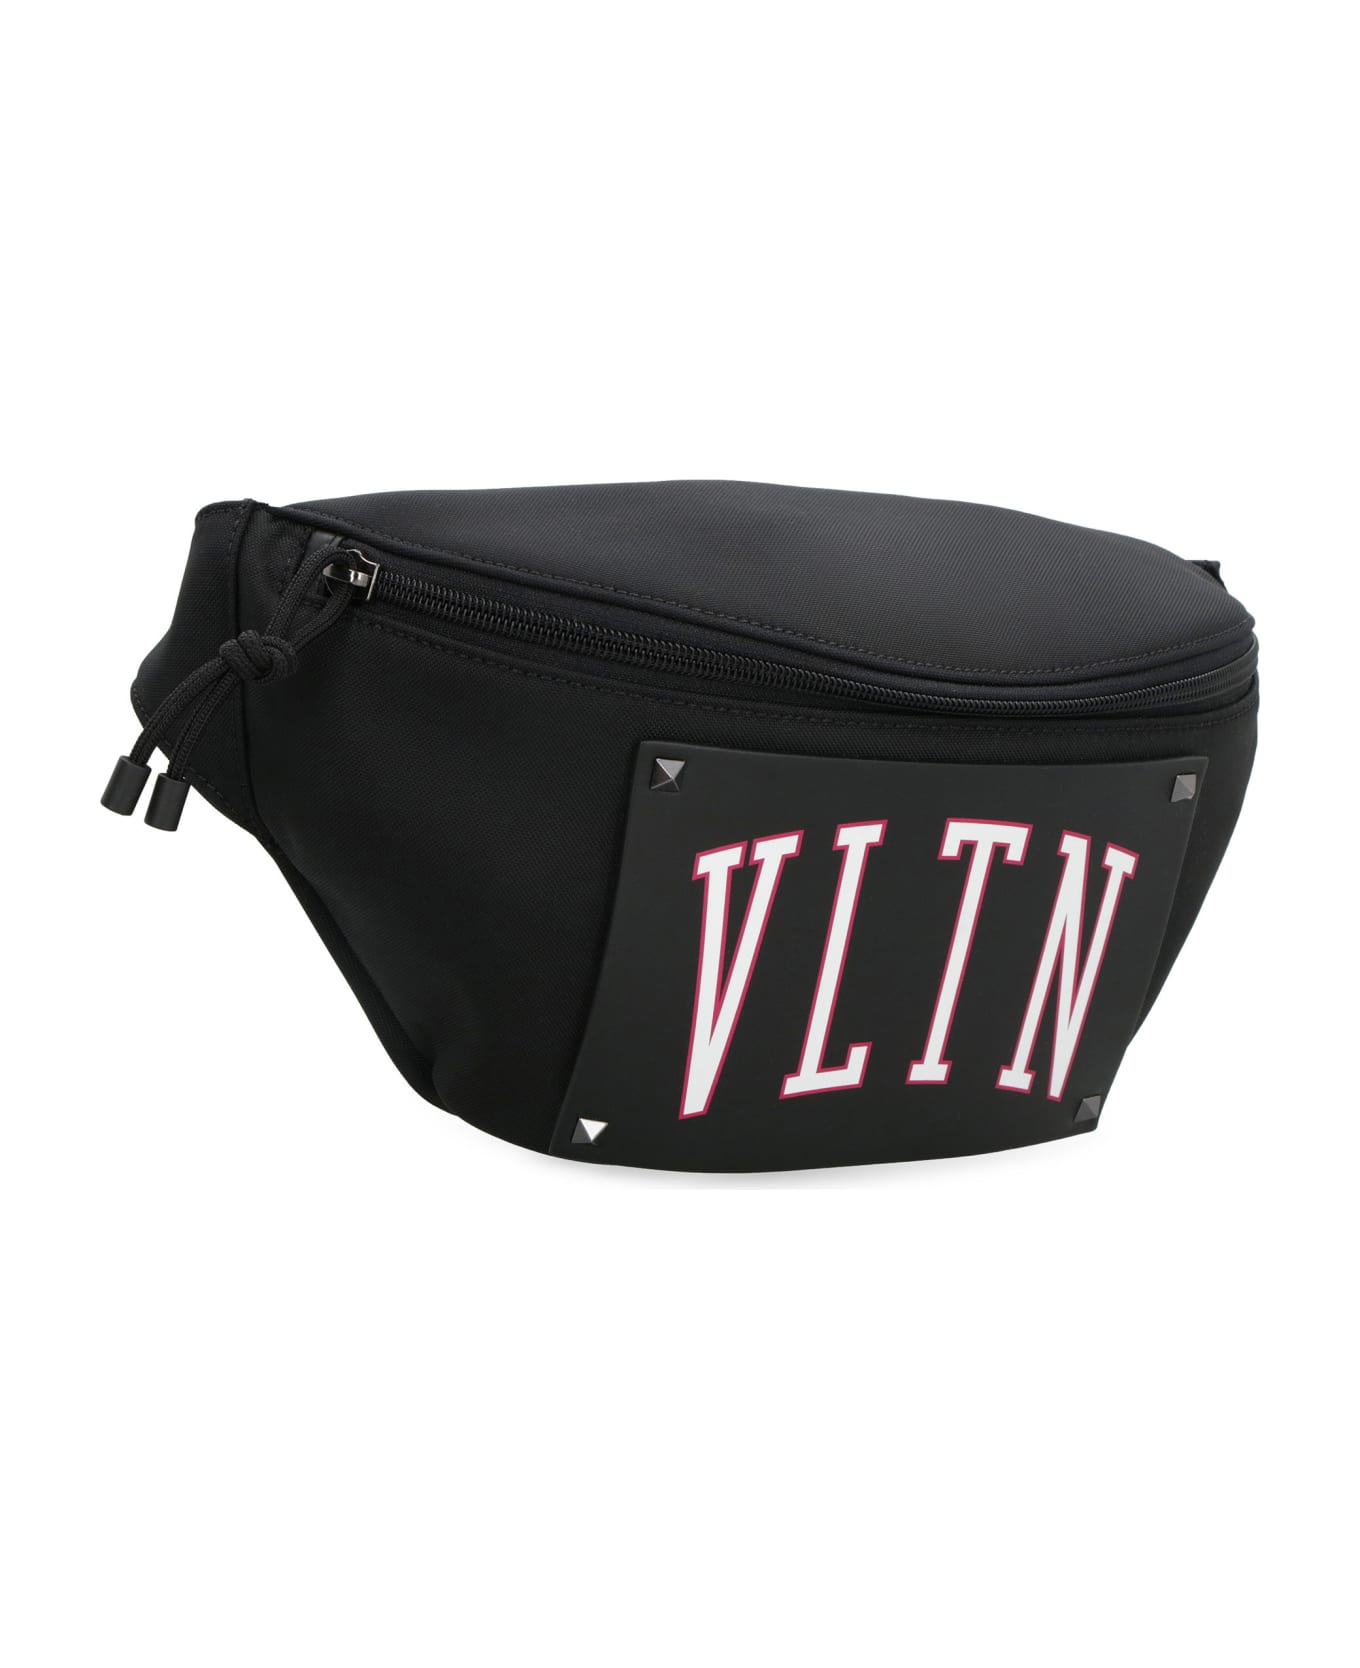 Valentino Garavani - Vltn Nylon Belt Bag - black ベルトバッグ